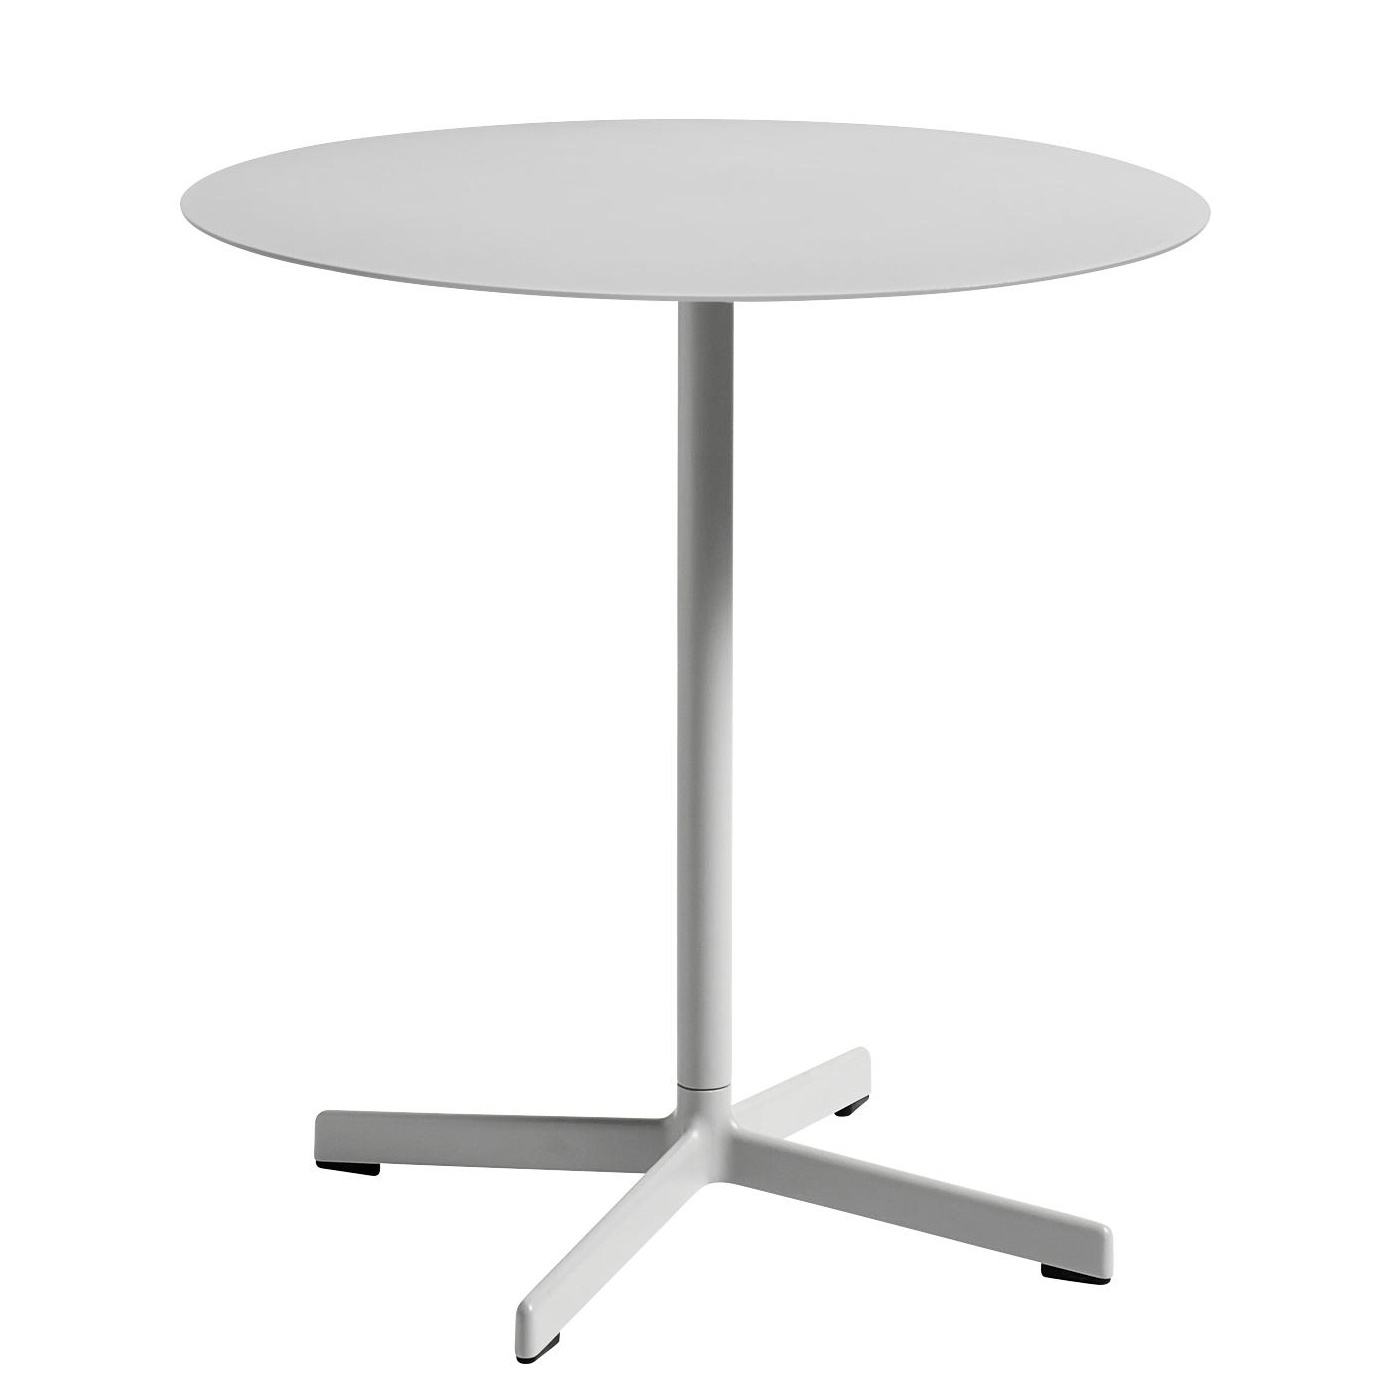 HAY - Neu Tisch rund Ø70cm - himmelgrau/pulverbeschichtet/H 74cm / Ø 70cm/für Innen- und Außenbereich geeignet von HAY